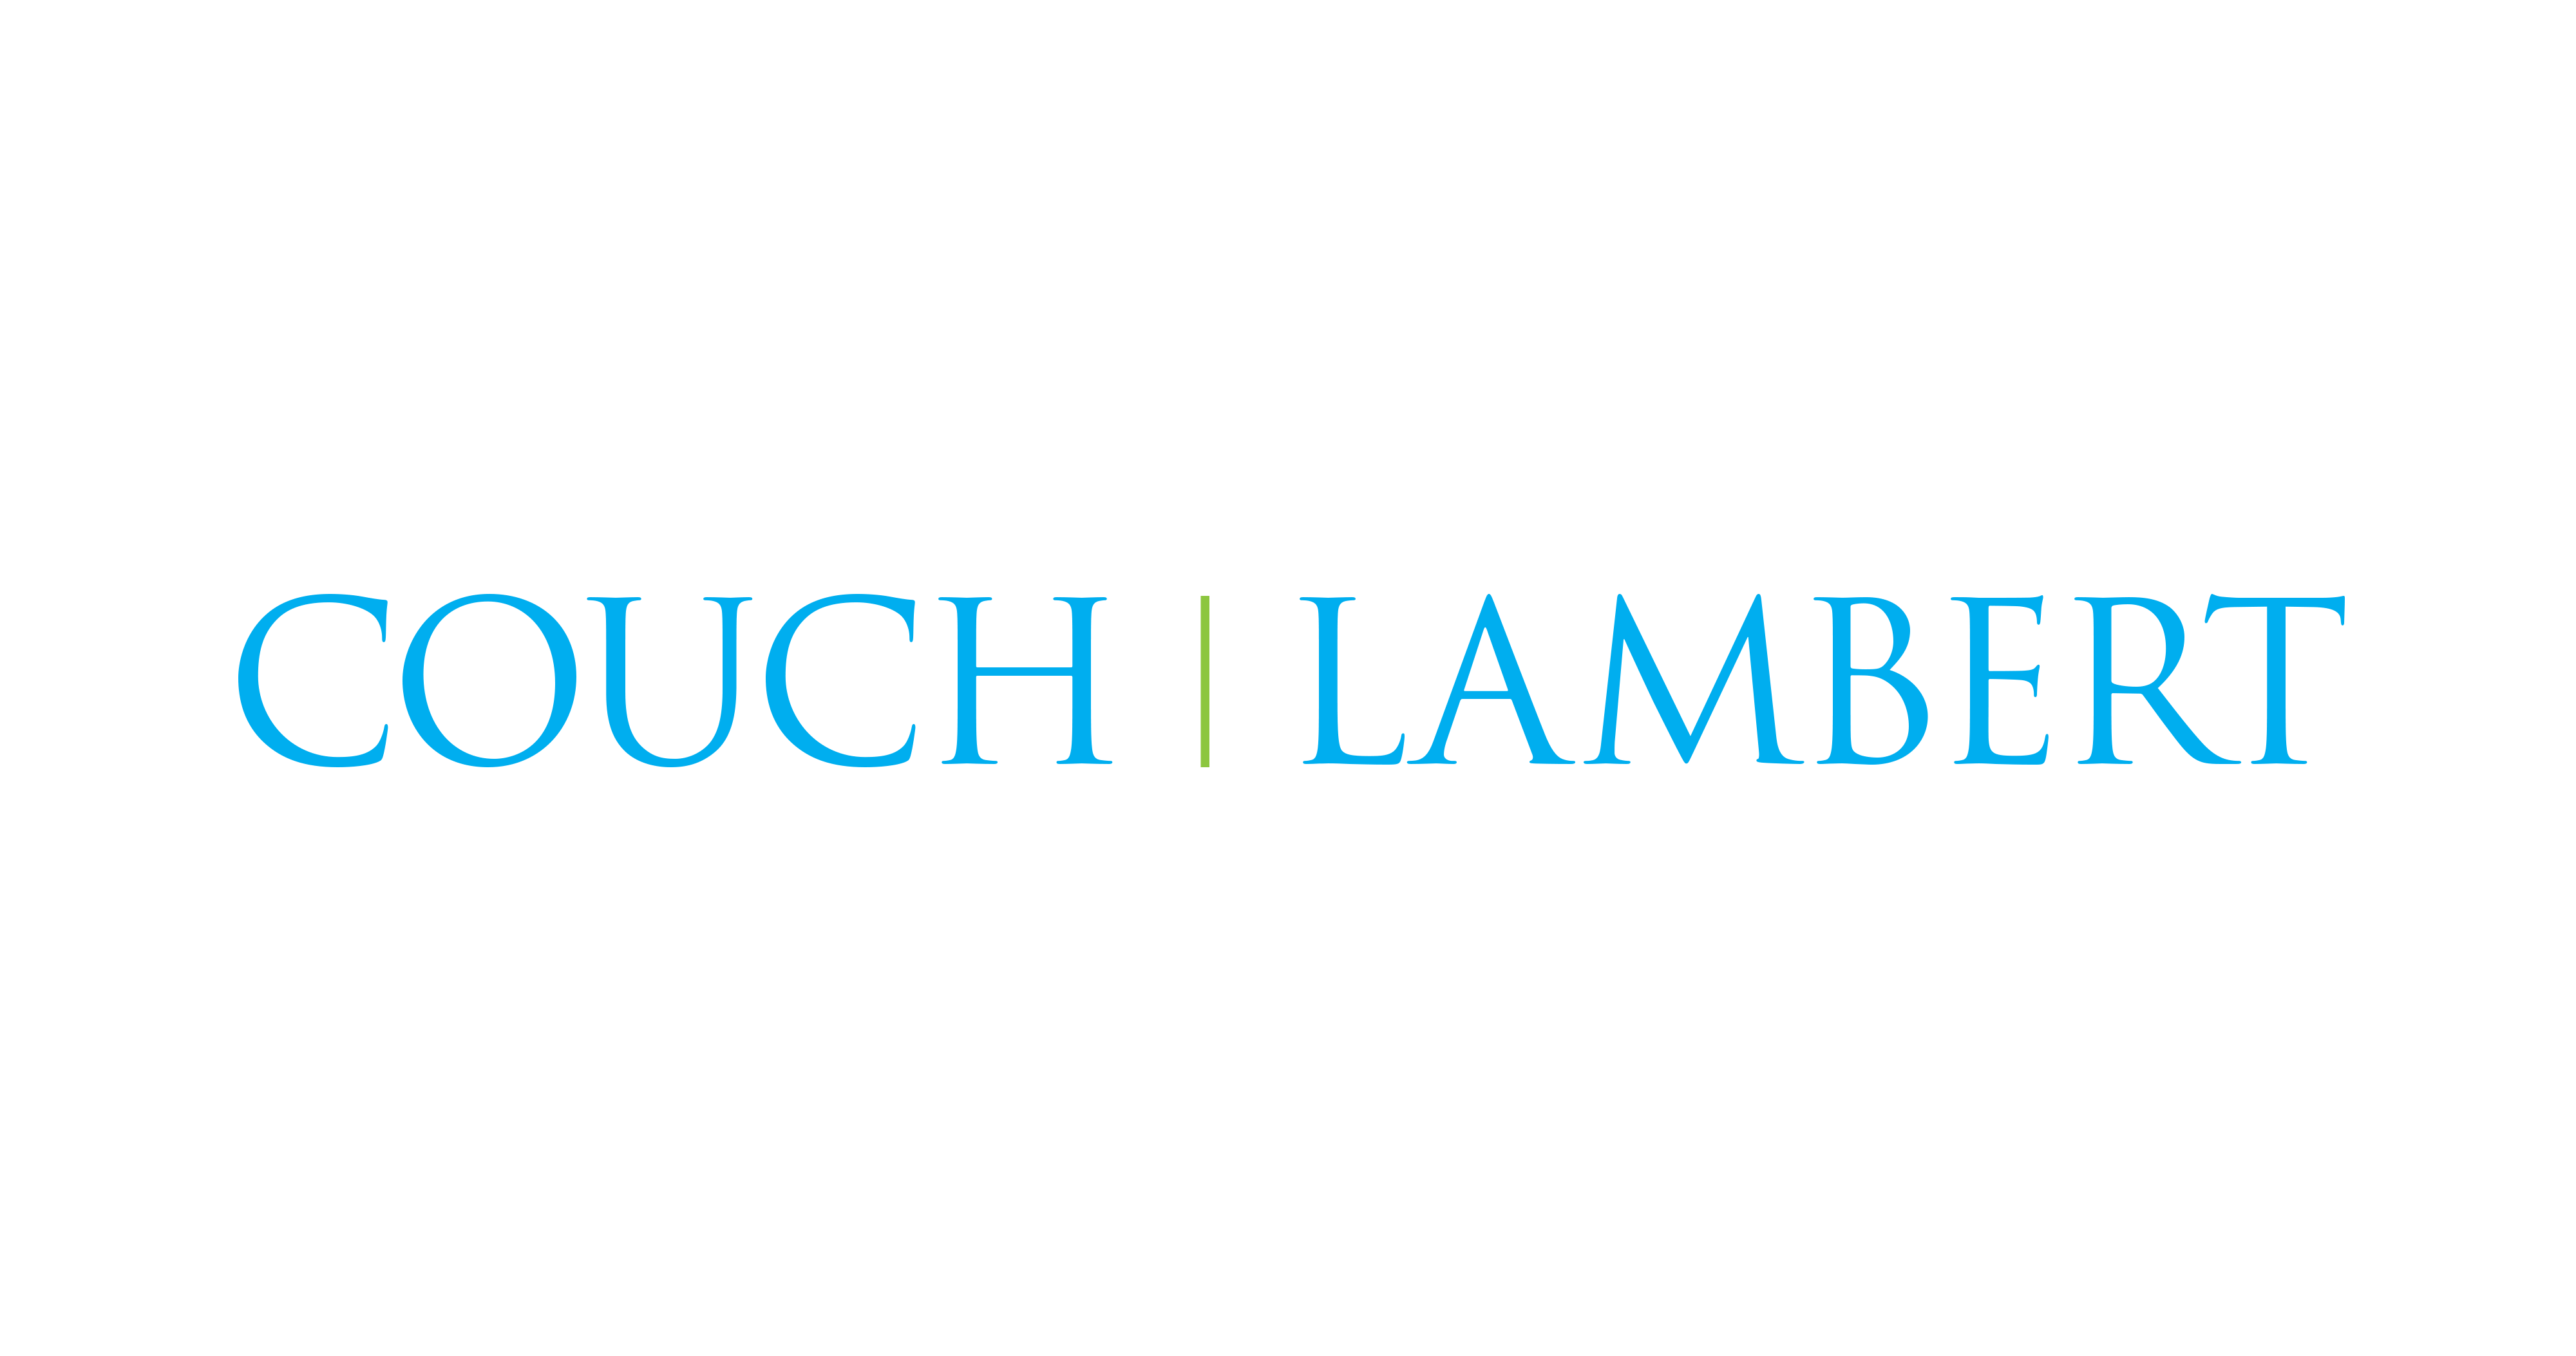 Couch Lambert LLC - Texas Associate Attorney Application